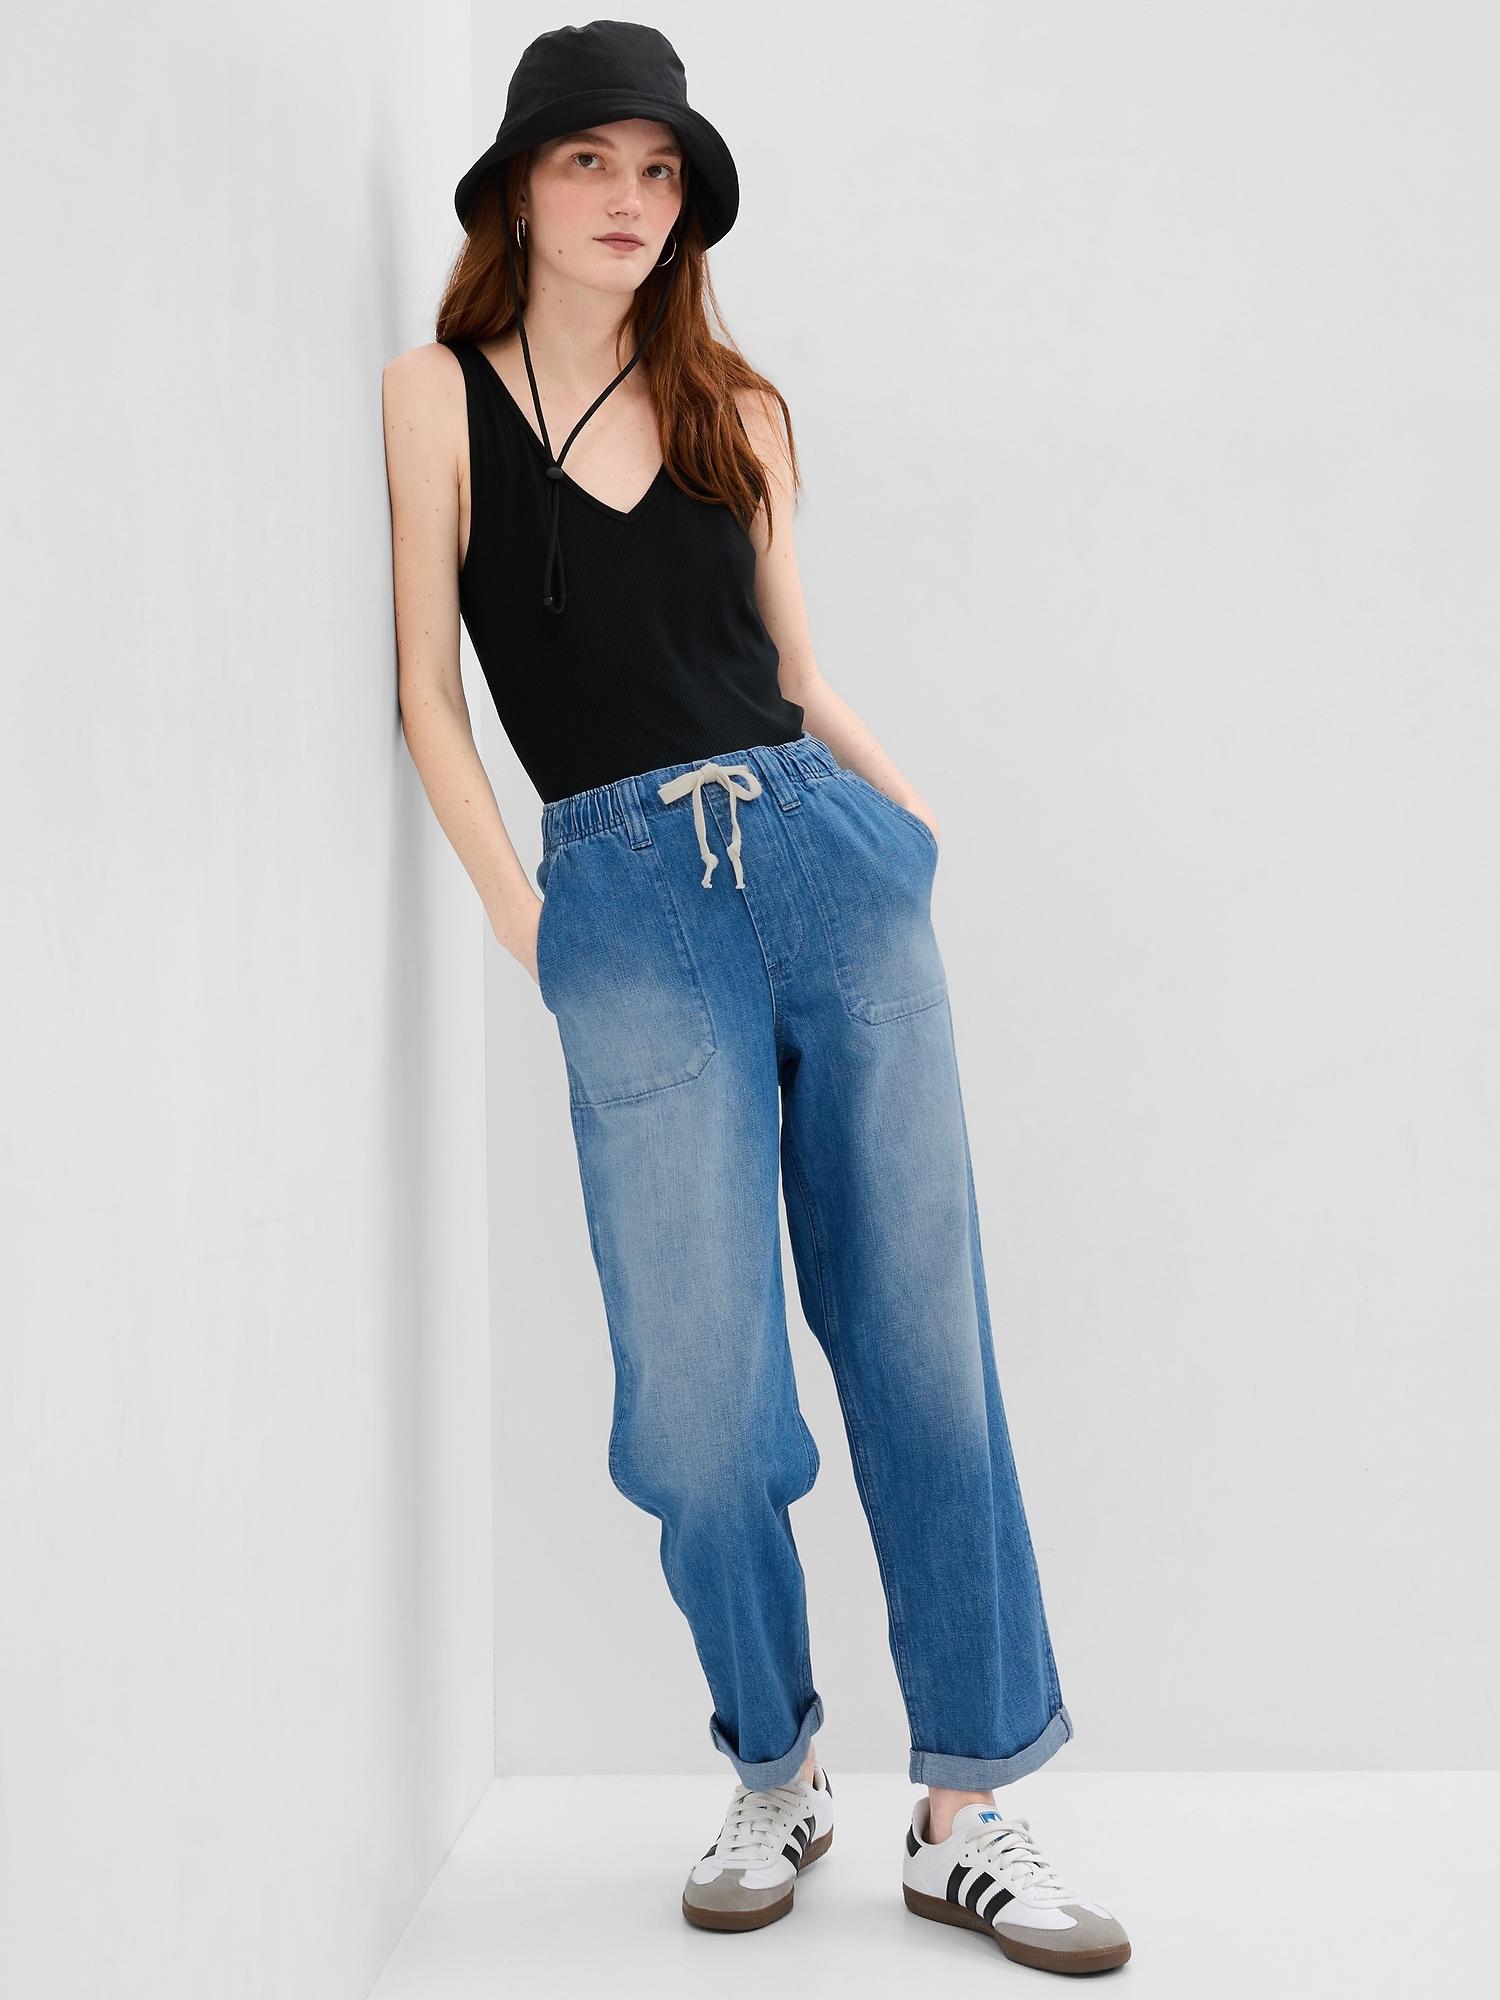 Gap Easy Denim Utility Jeans With Washwell In Medium Indigo